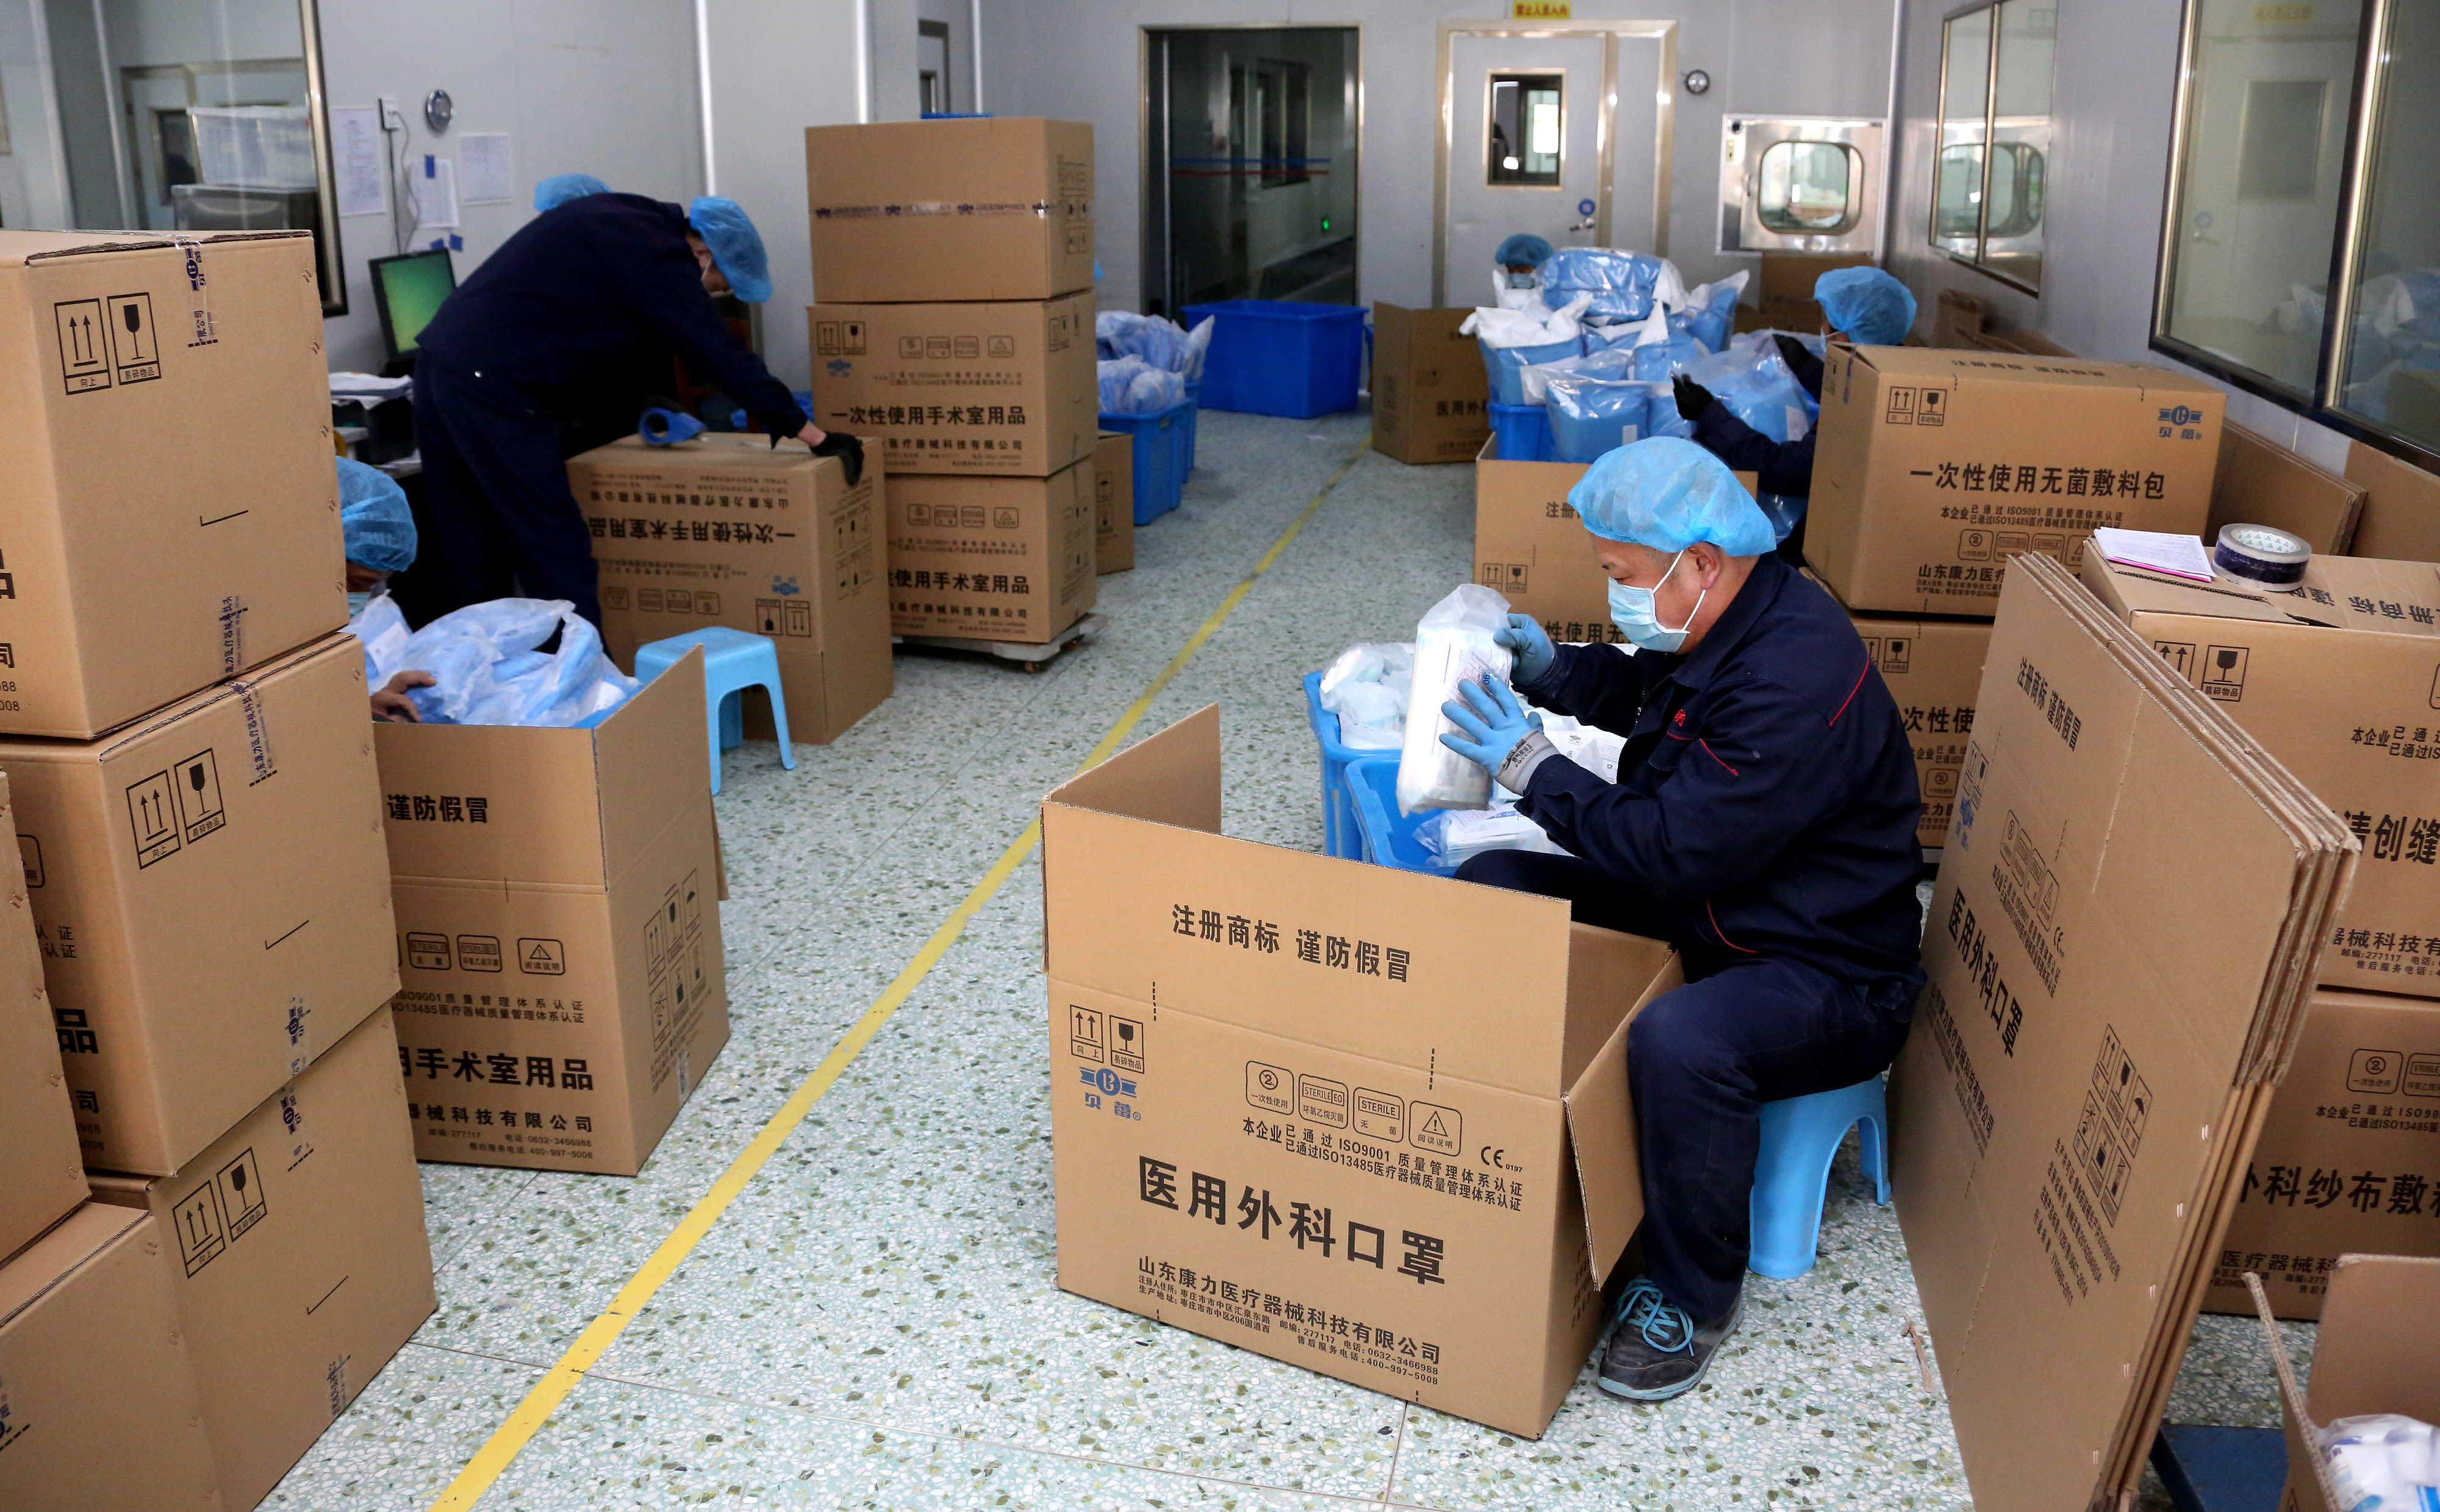 山东省枣庄市市中区一家专业生产医护用品的企业工人在包装医用口罩